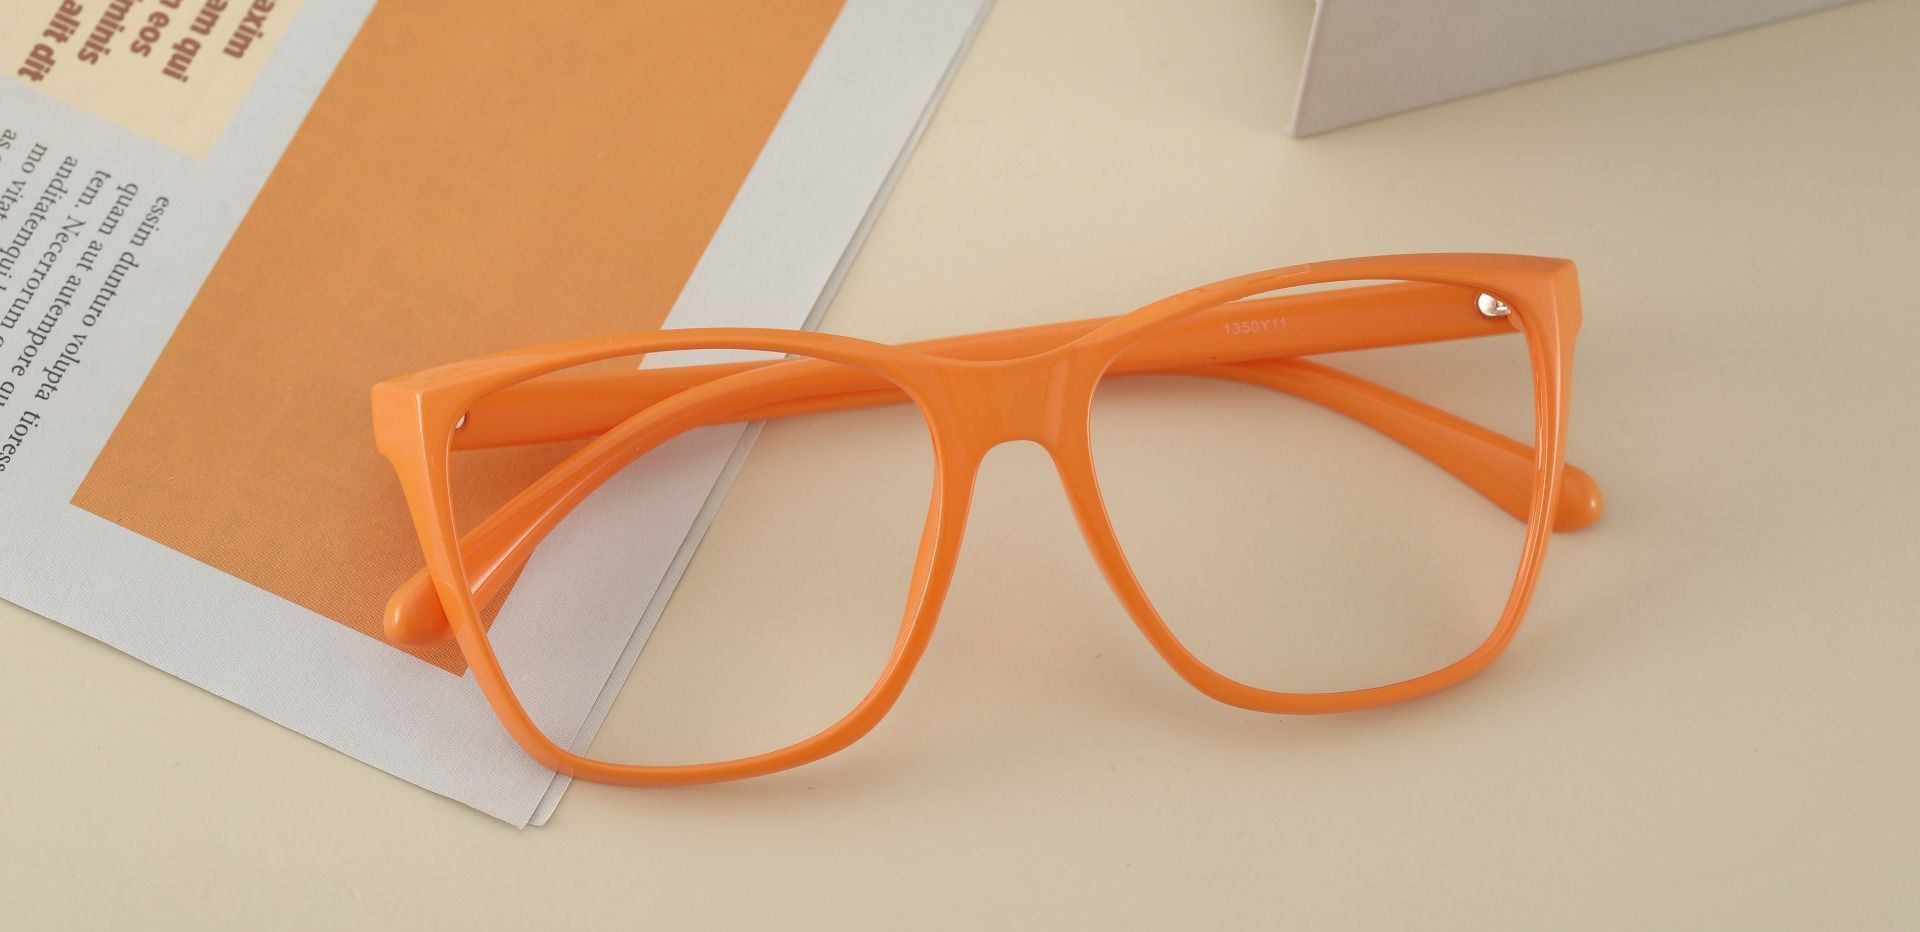 Hickory Square Prescription Glasses - Orange